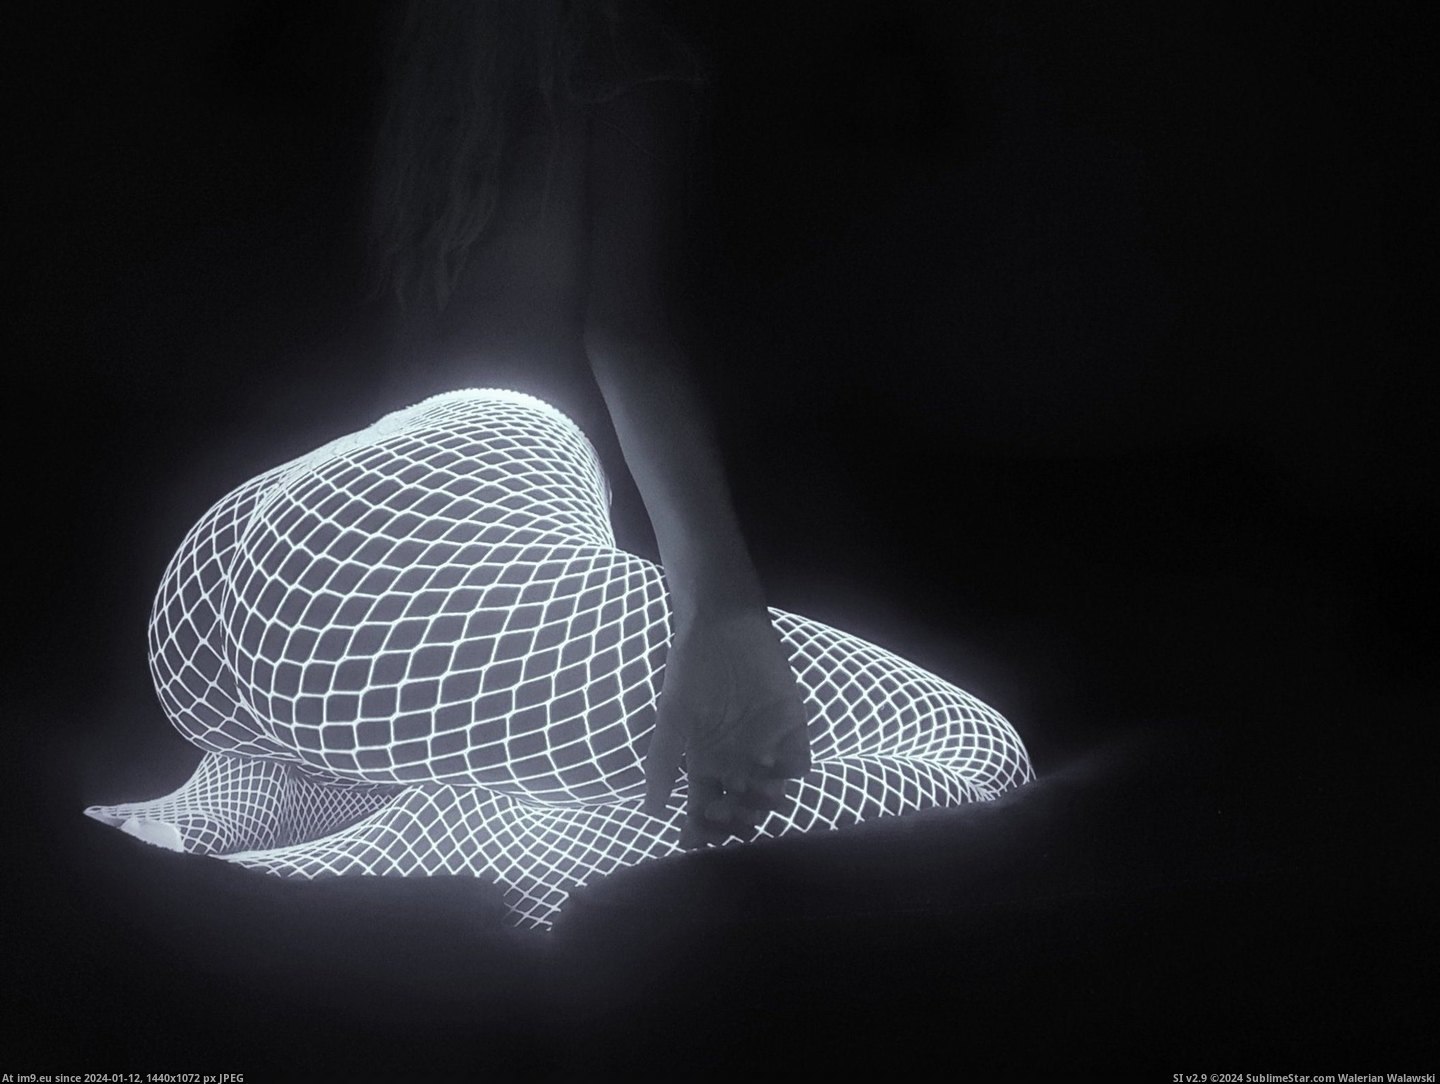 #Nsfw #Dark #Glow #Stockings #Fishnet [Nsfw] Glow-In-The-Dark Fishnet Stockings Pic. (Image of album My r/NSFW favs))